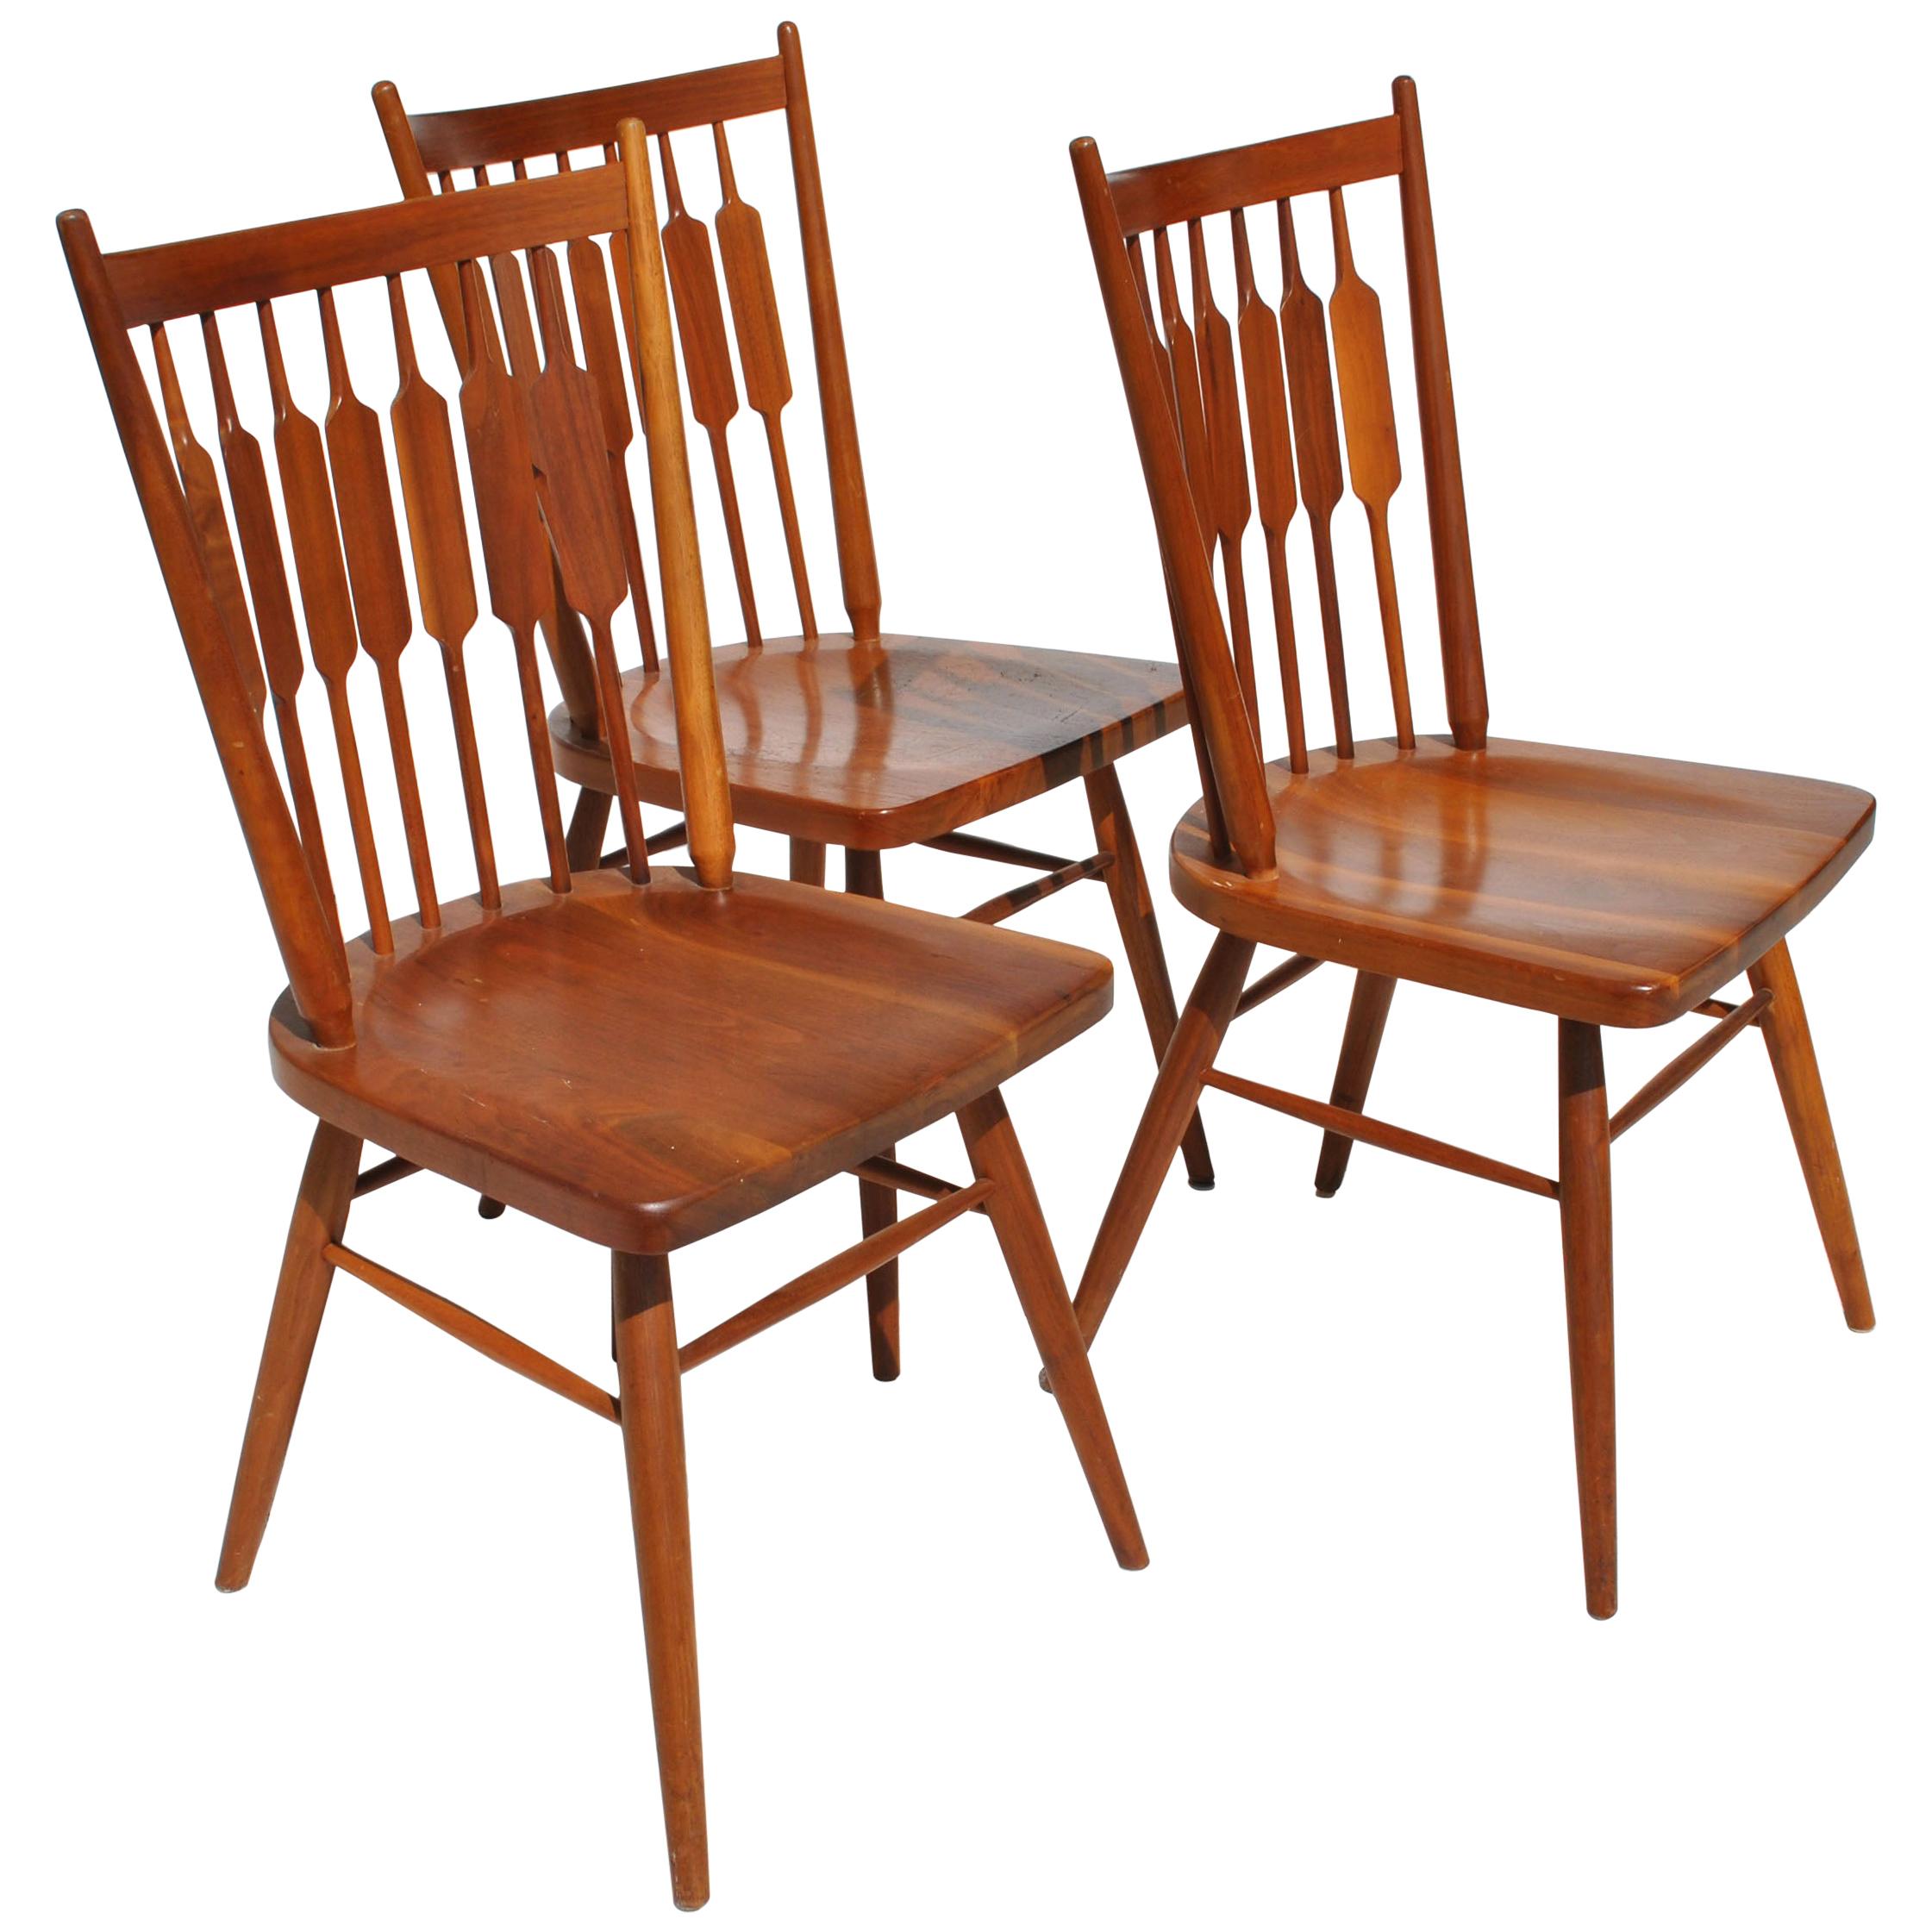 1 Vintage Mid-Century Modern Drexel Declaration Dining Chair by Kipp Stewart